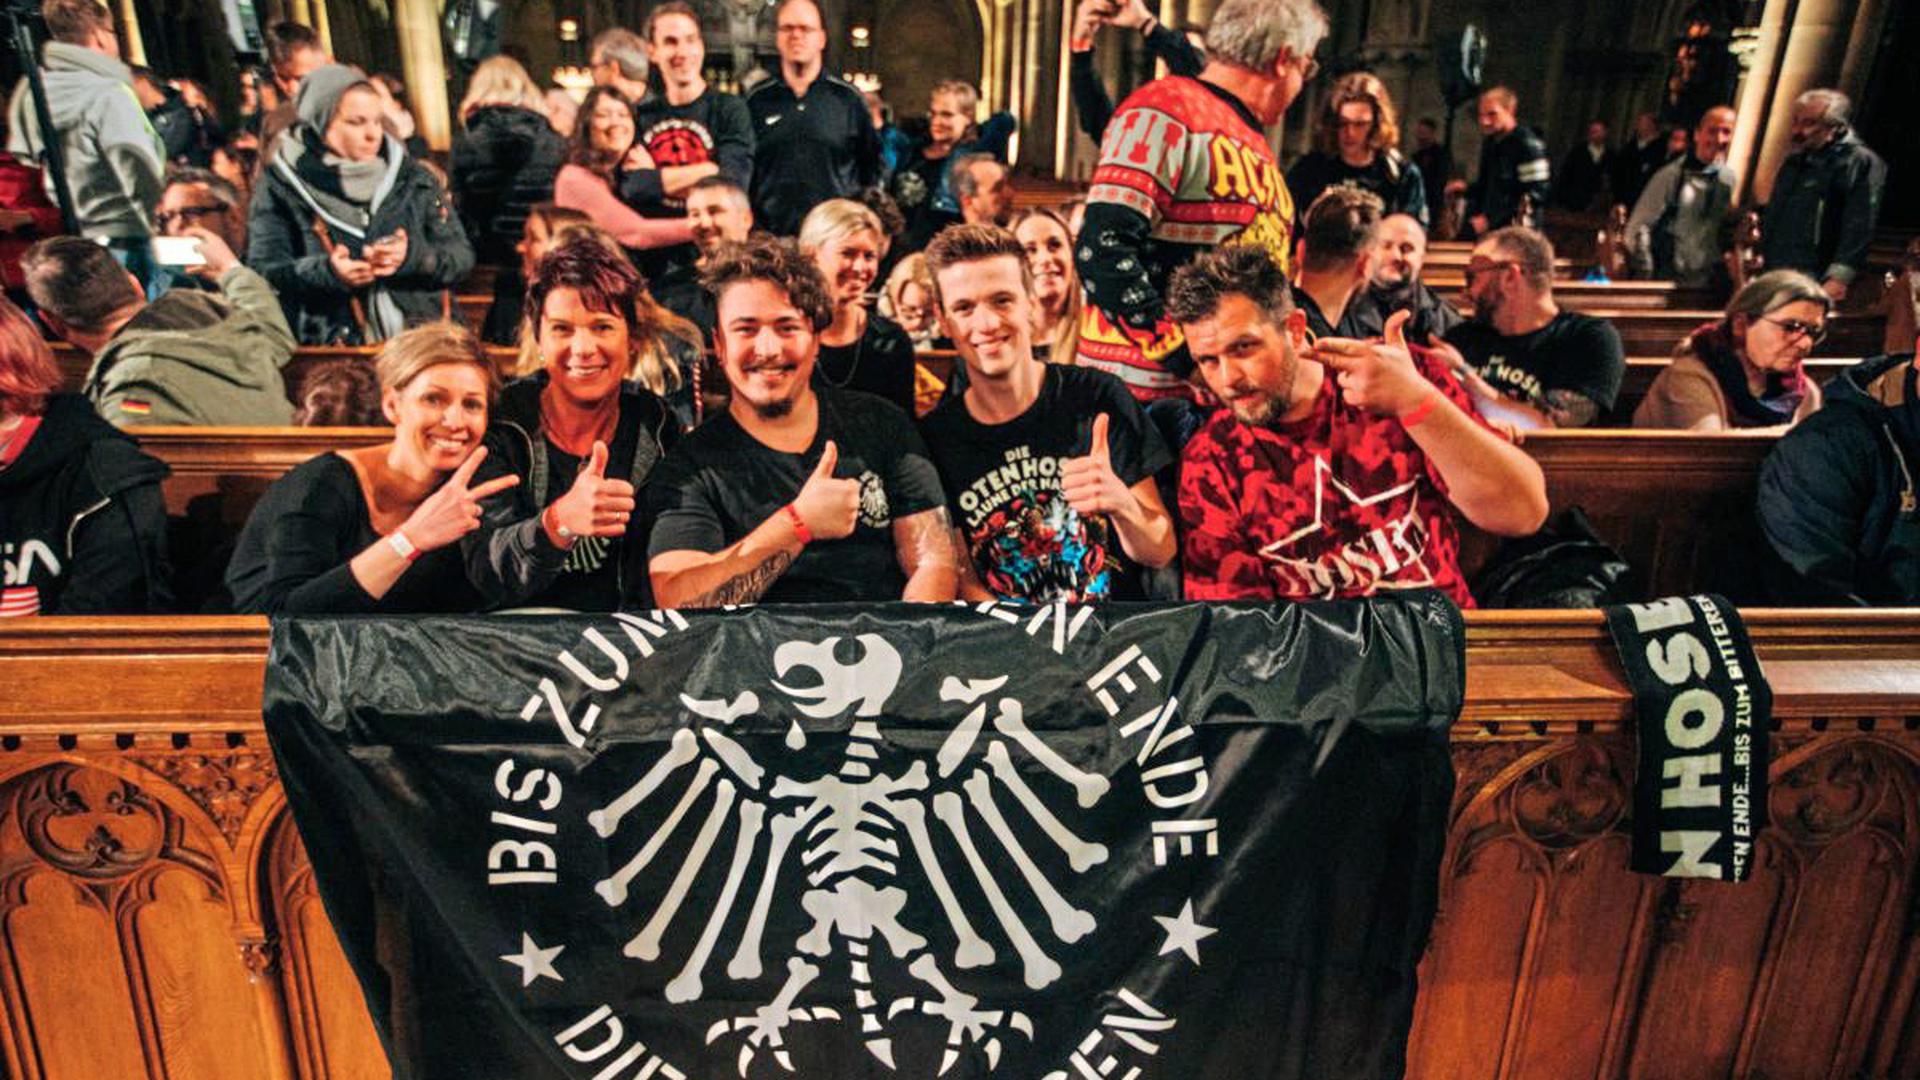 Mit passenden T-Shirts und Fahne ausgestattet kam diese Gruppe nach Speyer.